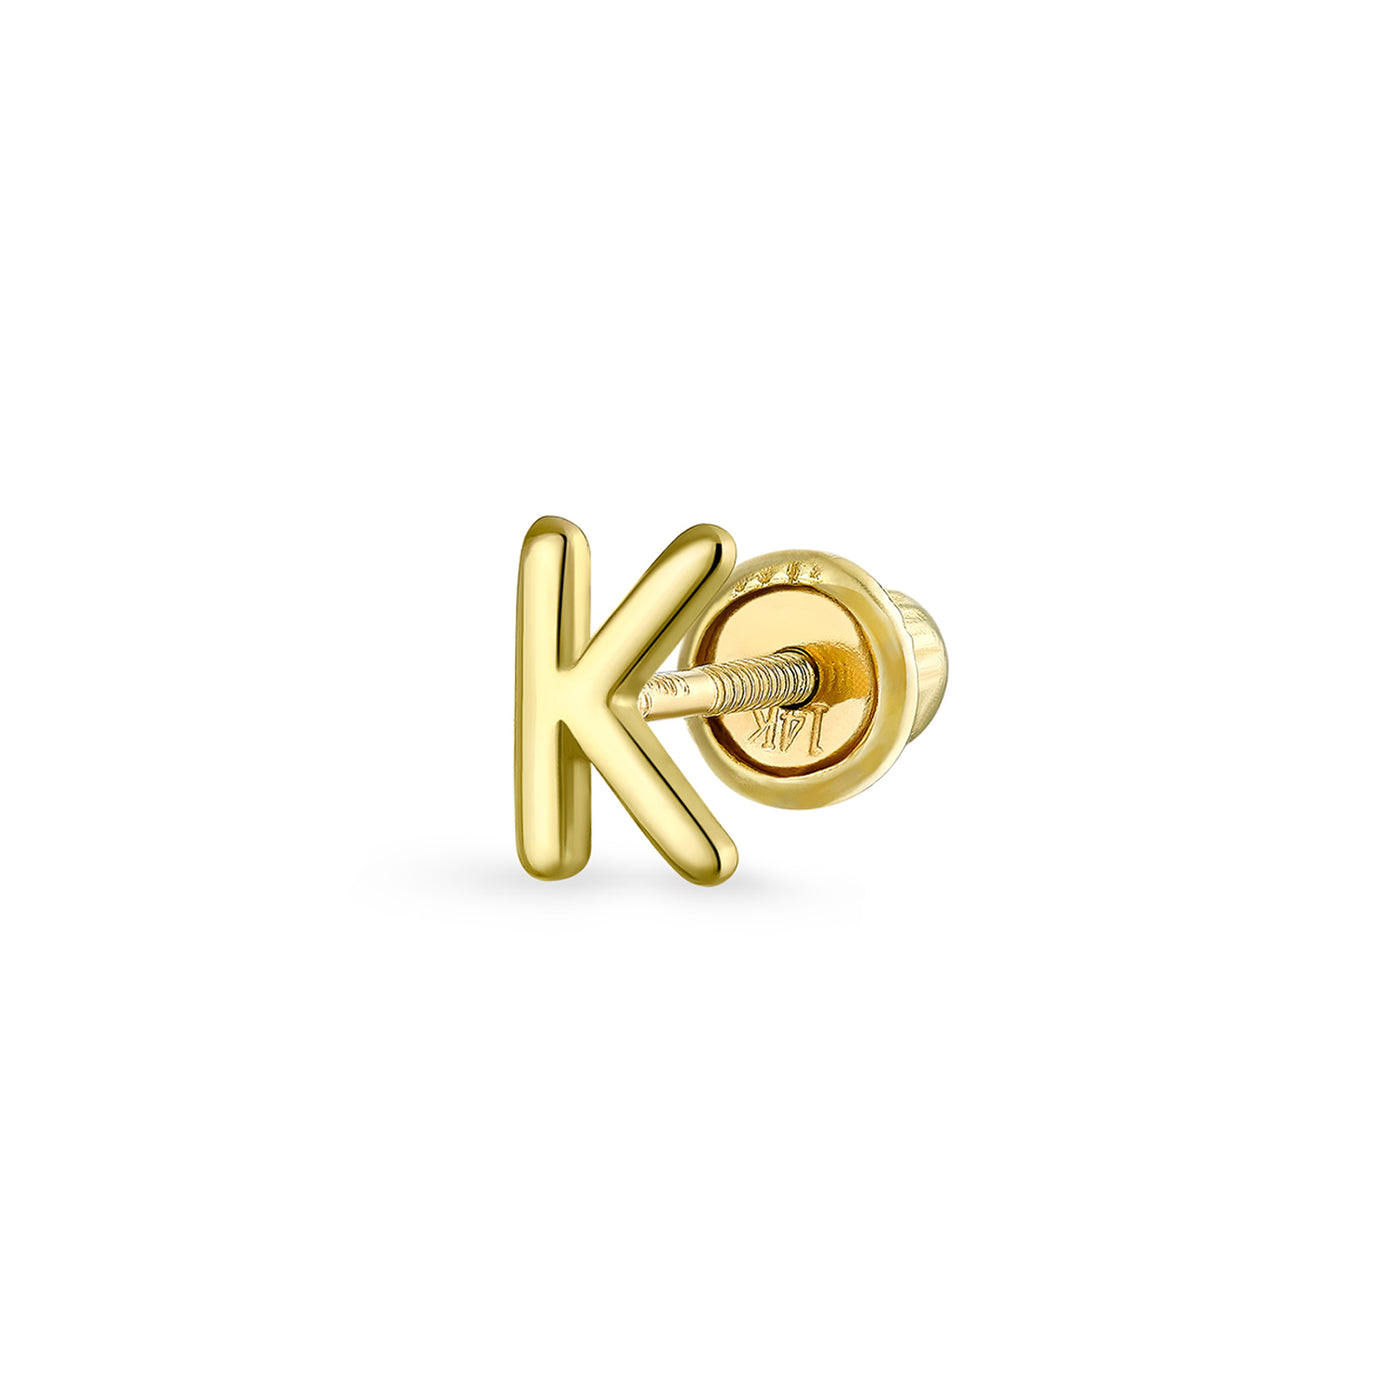 Gold K